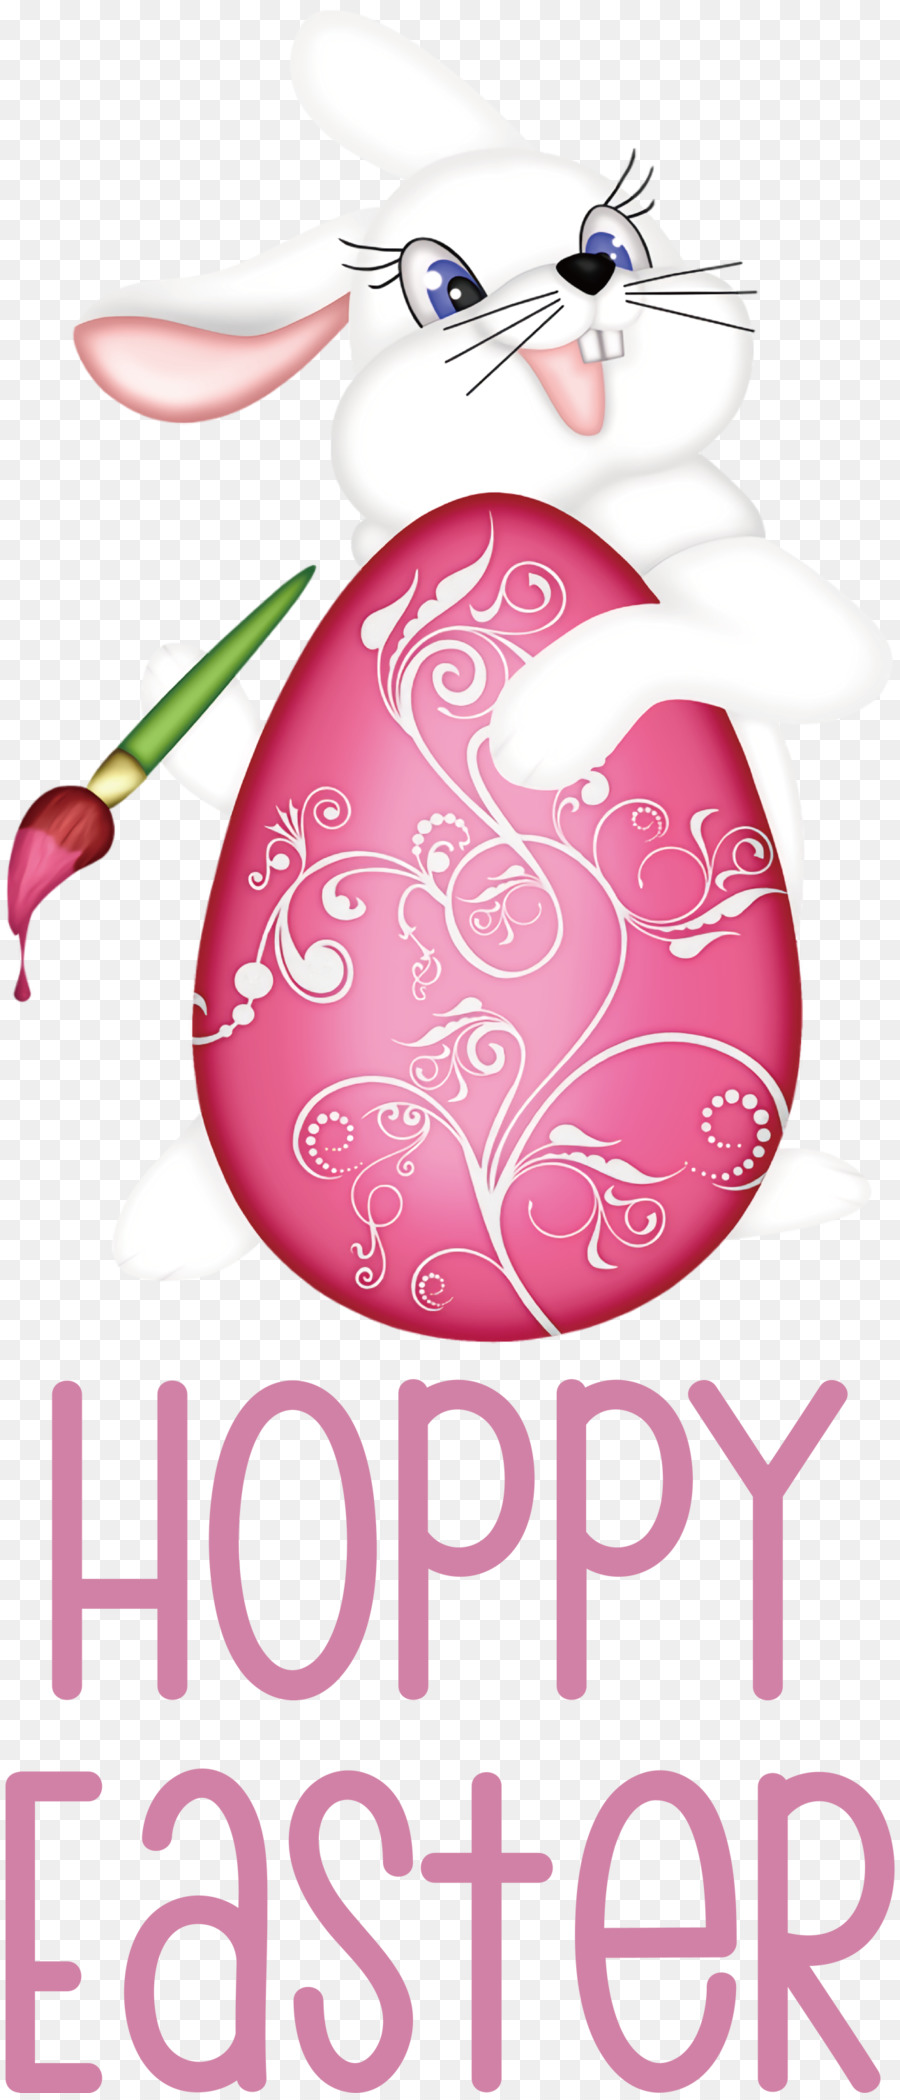 Hoppy Easter Easter Day Happy Easter